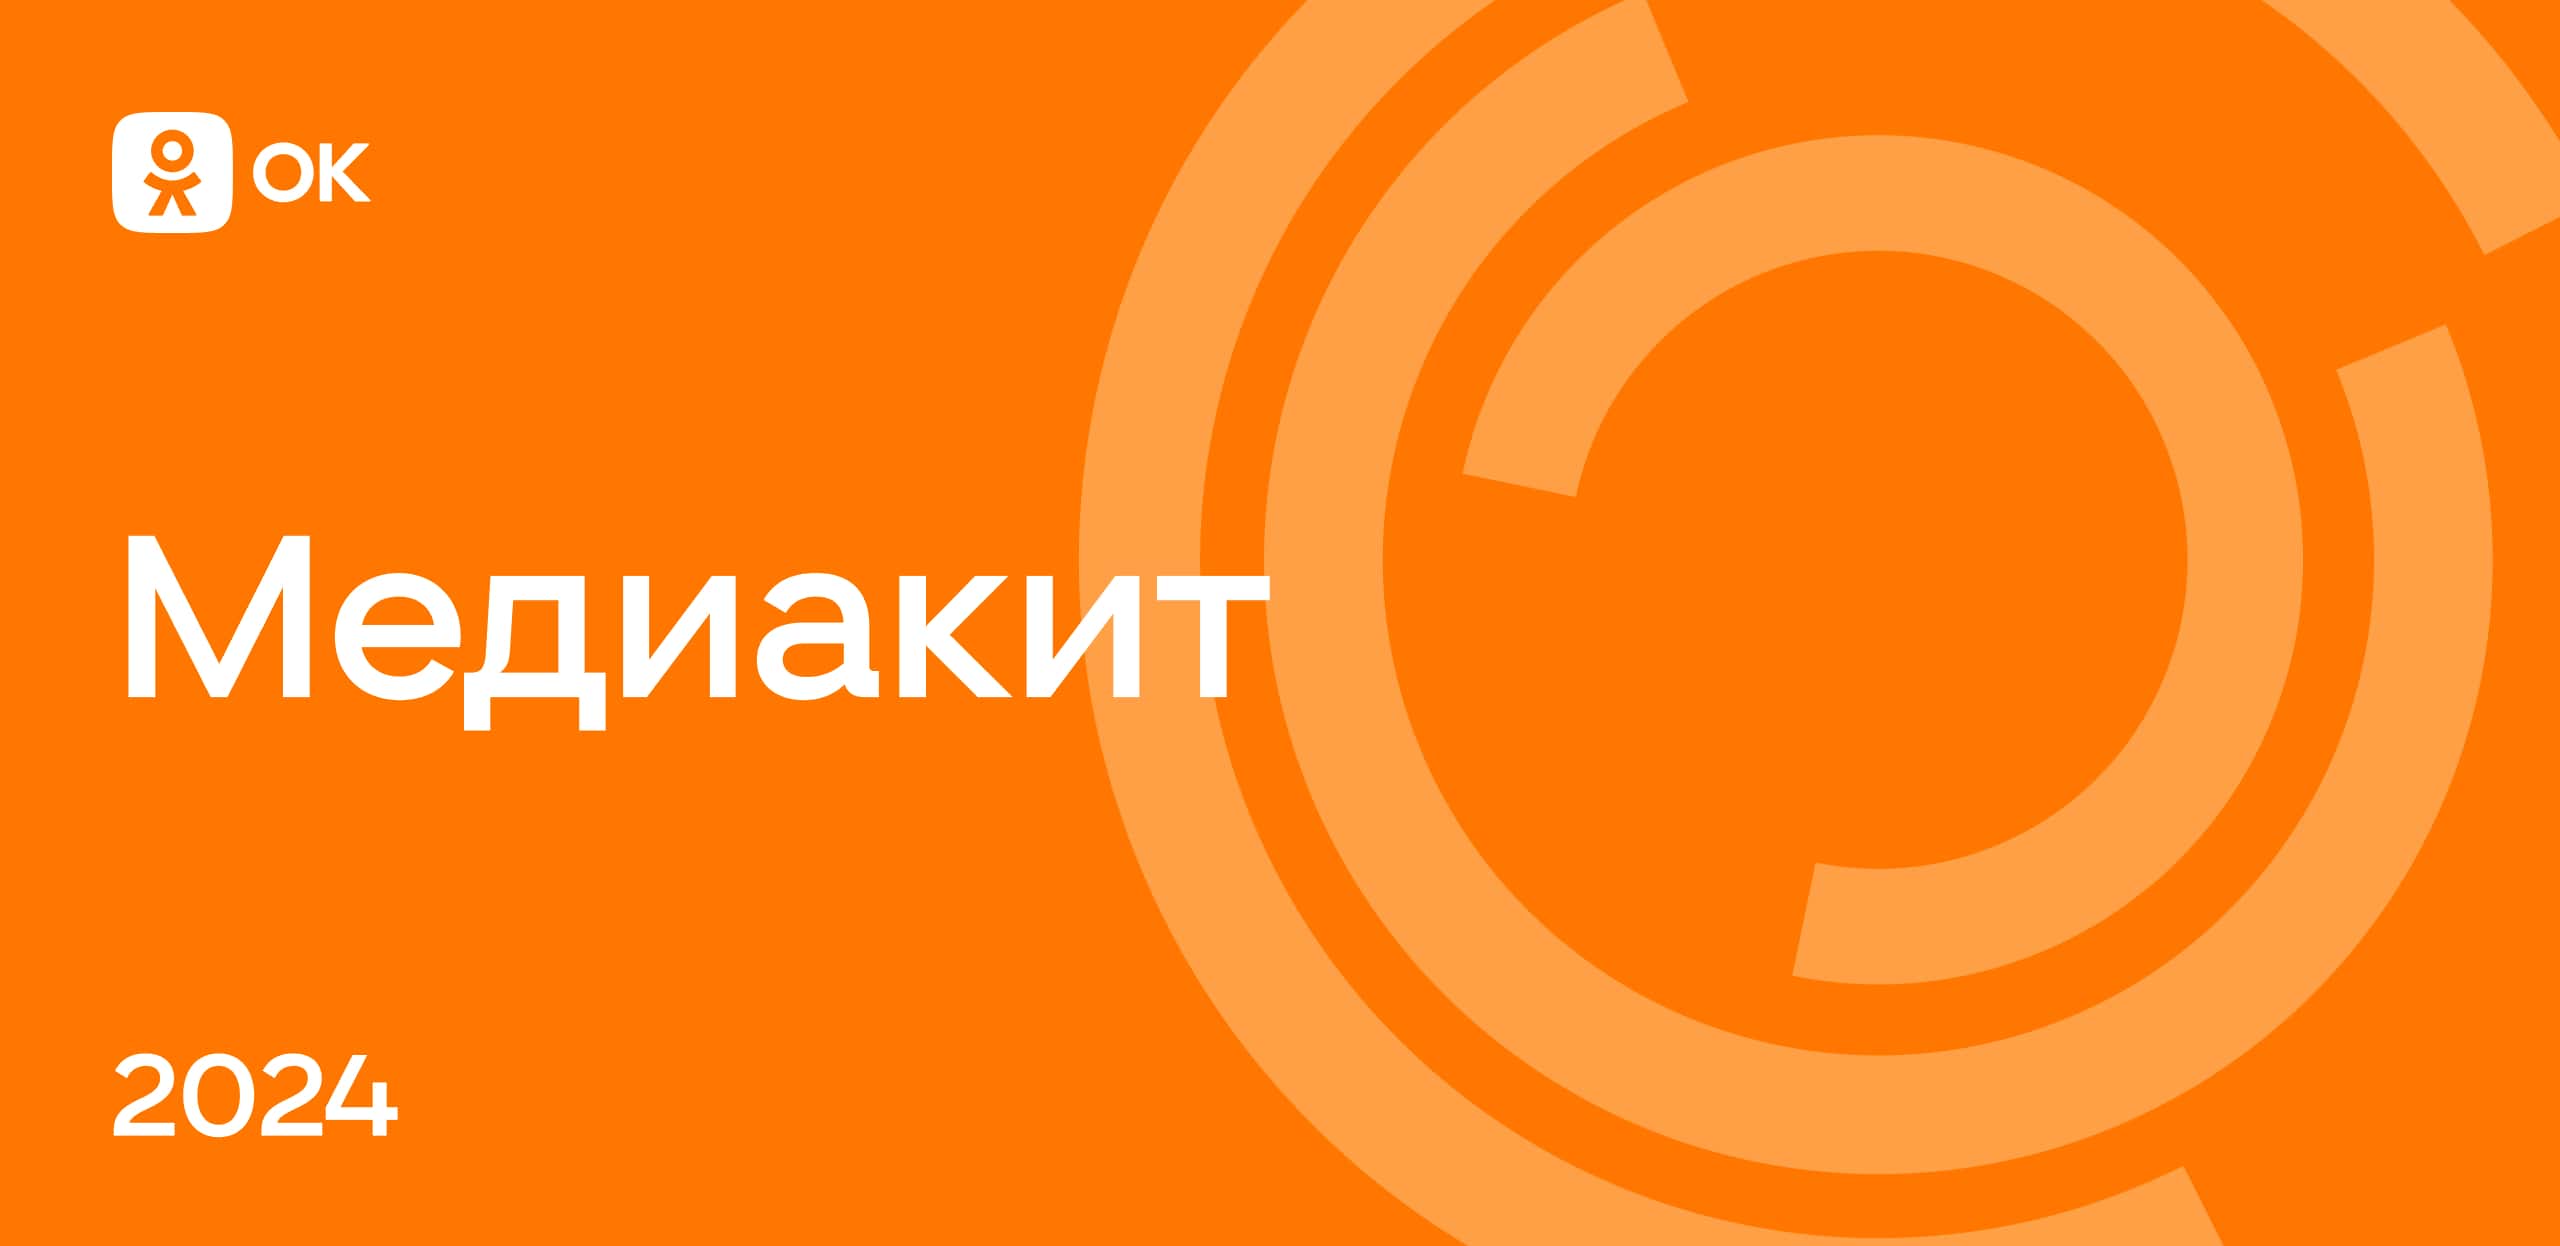 В Одноклассниках не открываются сообщения: что делать? | FAQ about OK